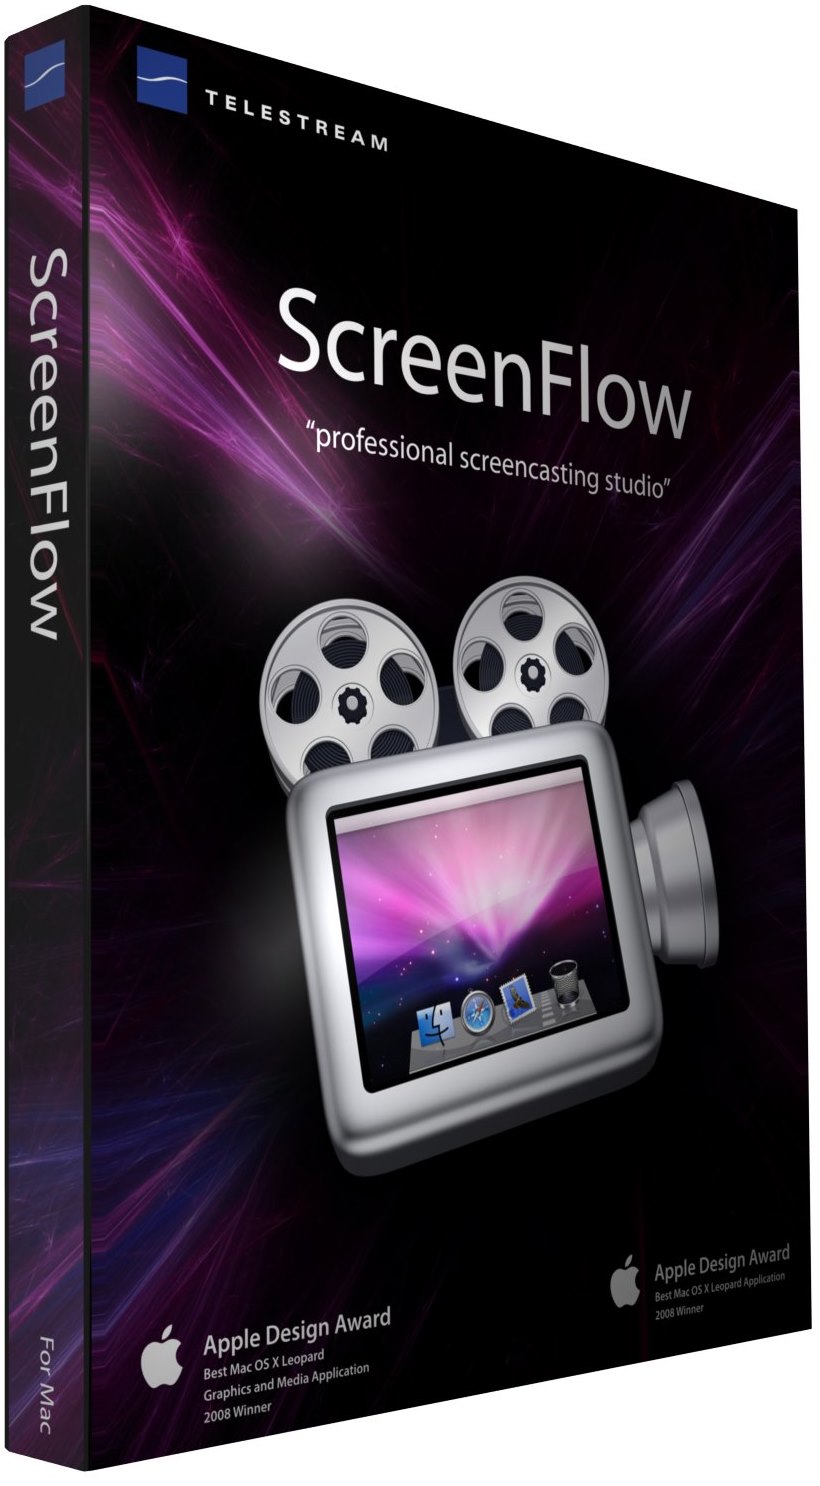 screenflow 6 mac download sierra